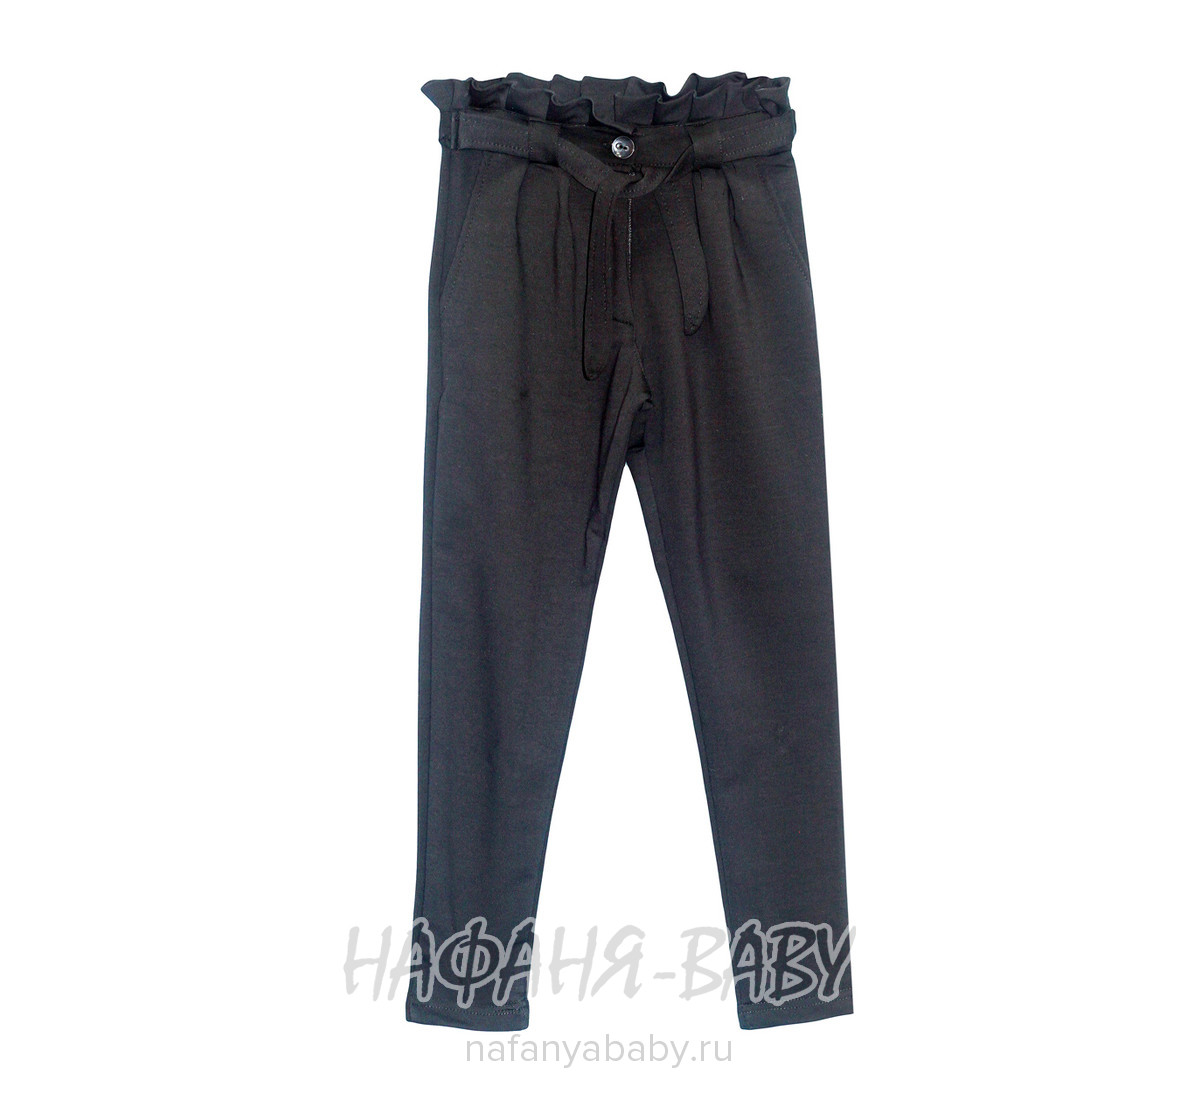 Модные трикотажные брюки для девочки ATC, купить в интернет магазине Нафаня. арт: 1685.